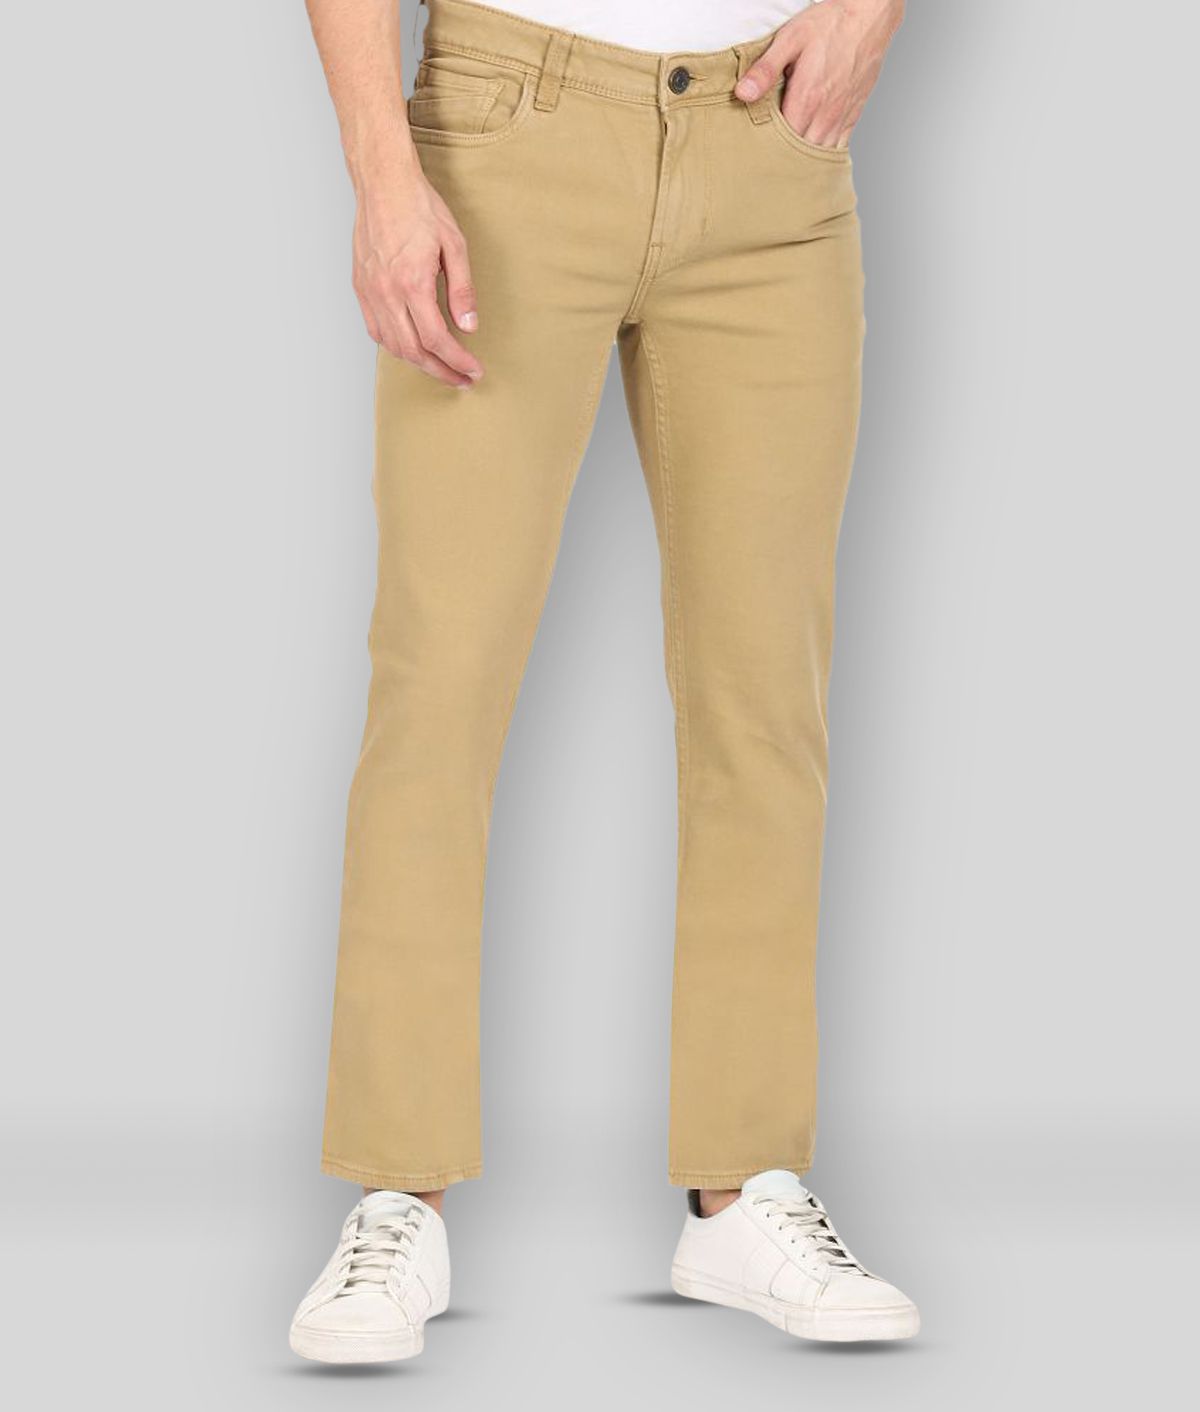     			Colt - Brown Cotton Blend Regular Fit Men's Jeans ( Pack of 1 )